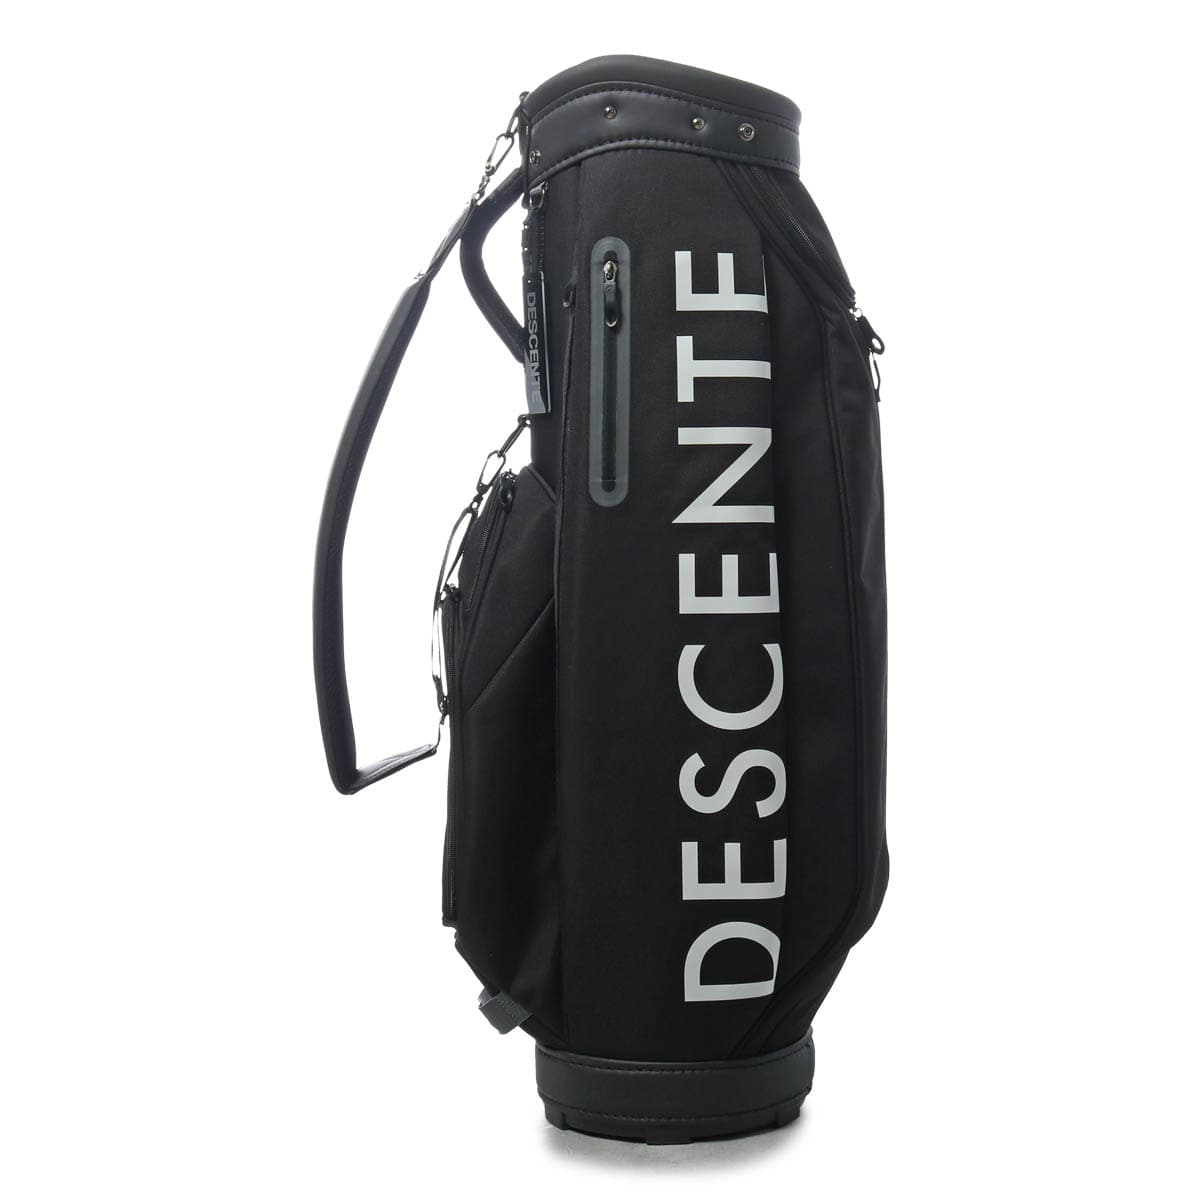 デサント ゴルフ キャディバッグ カート型 6分割 9型 47インチ対応 3.0kg メンズ DQBVJJ03 DESCENTE Move Sport  ゴルフバッグ スポーツ 軽量